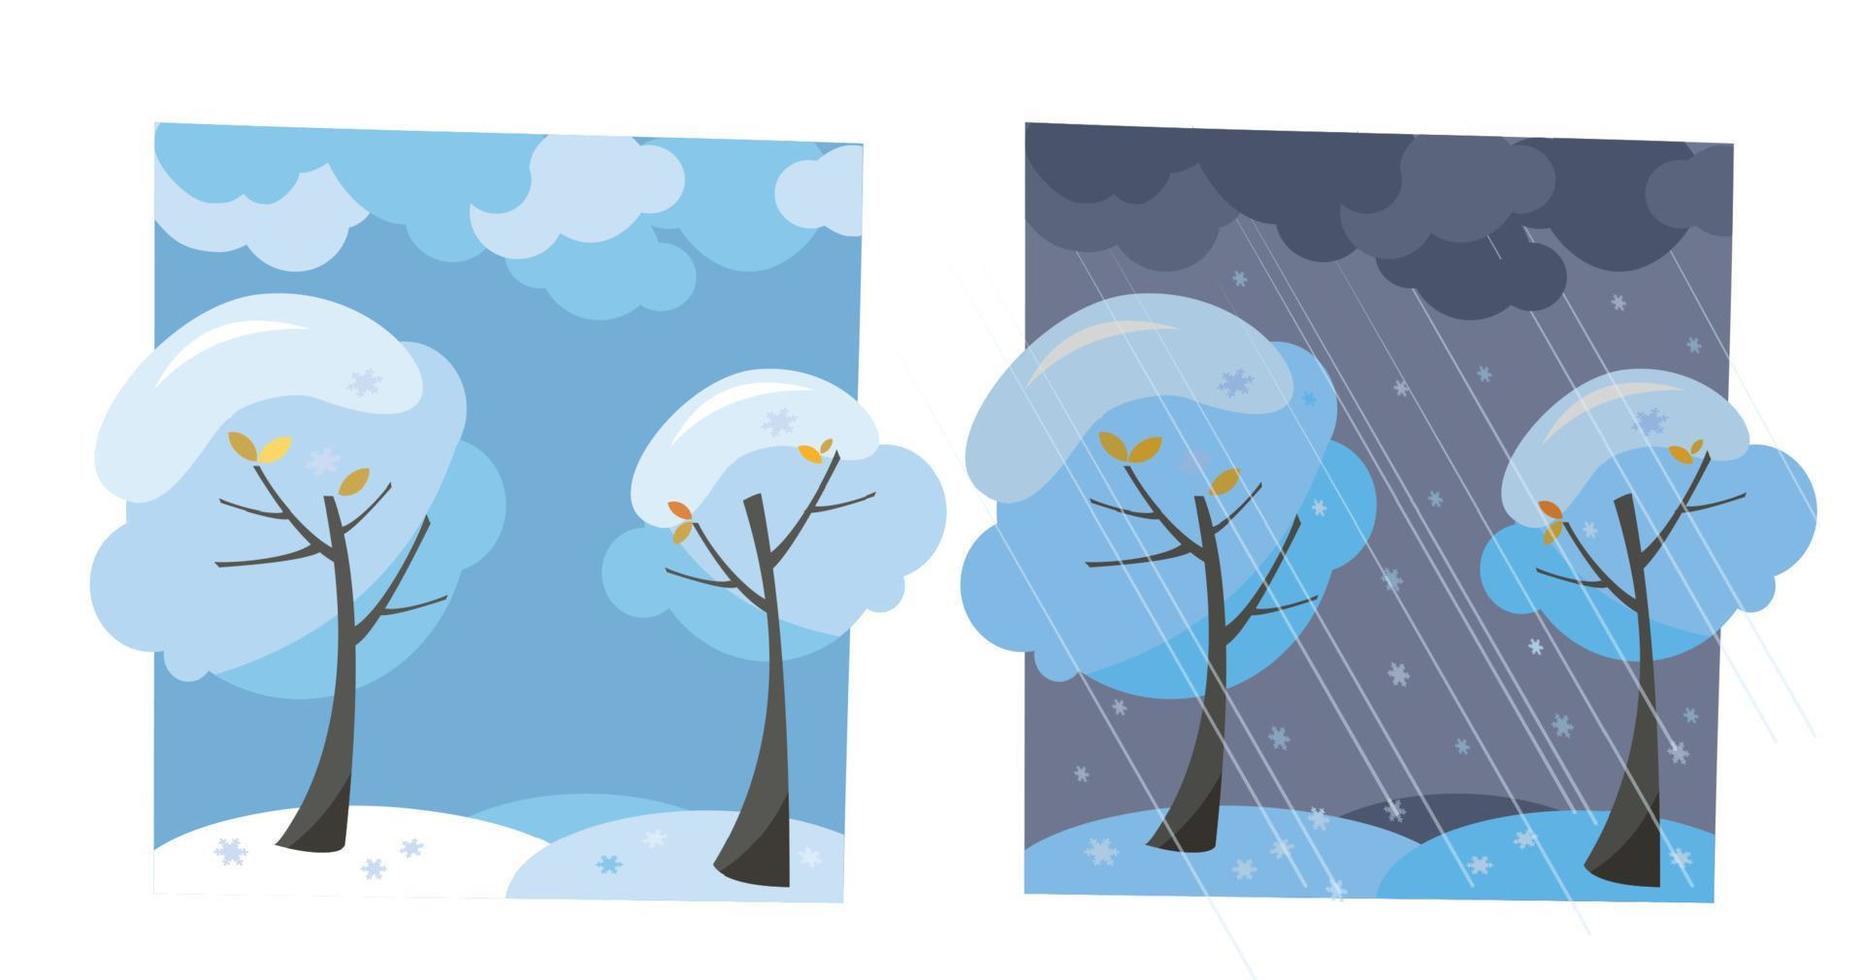 Winterschneebäume mit fliegenden Schneeflocken. Set aus zwei nicht parallelen Bildern mit Blick auf gutes sonniges Wetter und dunklen Abend. flache Cartoon-Vektor-Illustration. Bäume mit runder Krone unter Wolkenhimmel vektor